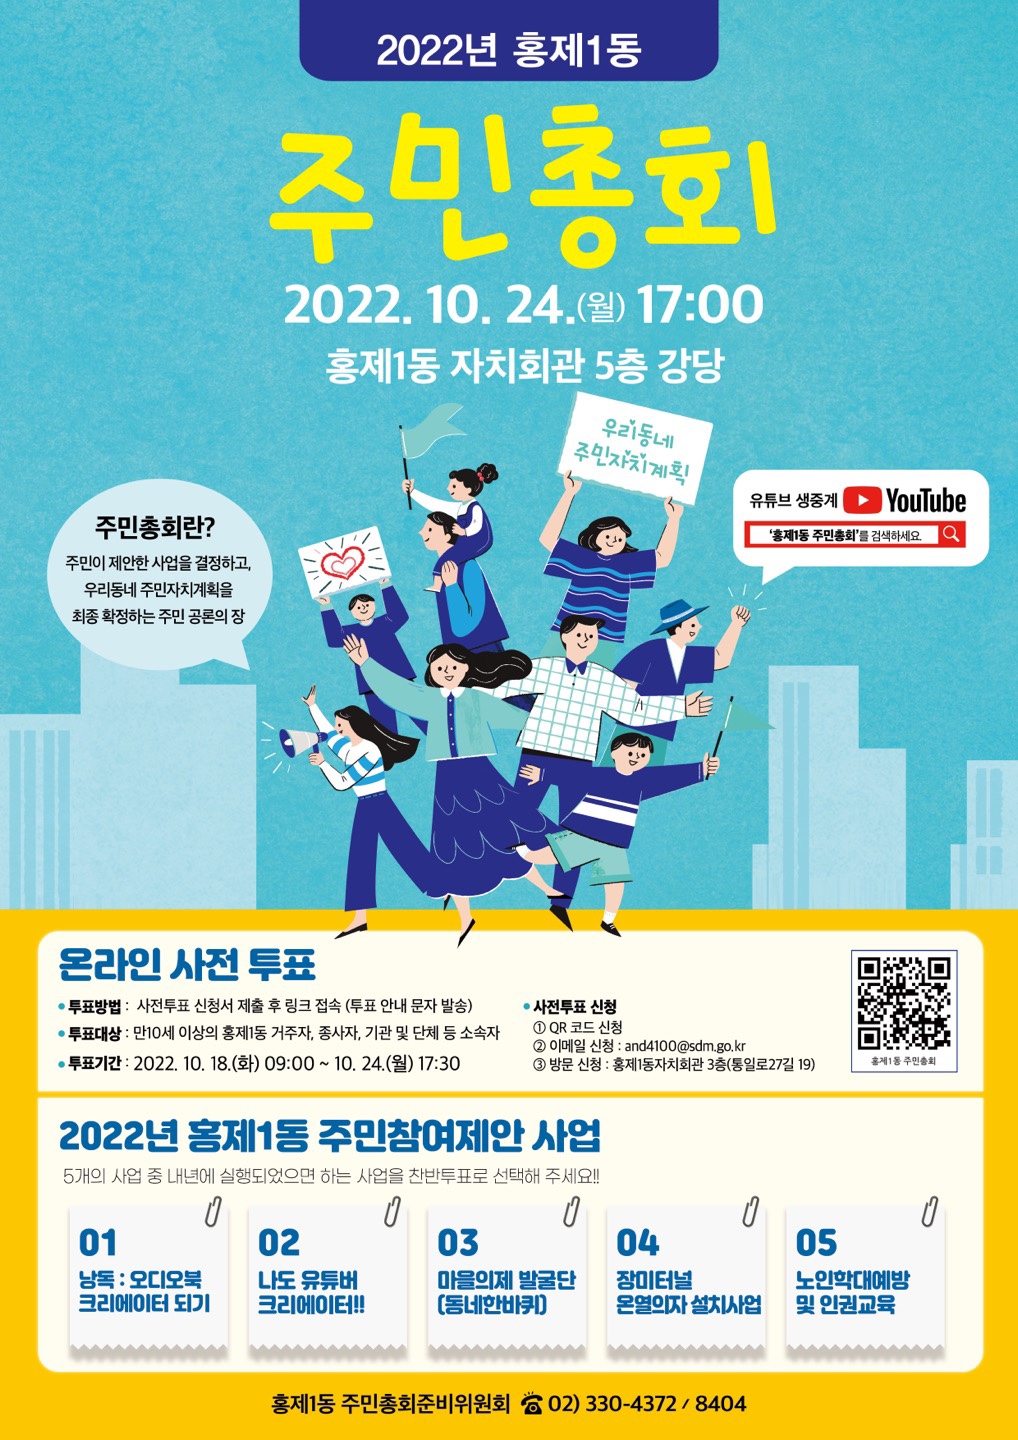 2023년 홍제1동 주민참여예산 및 자치계획 승인 투표